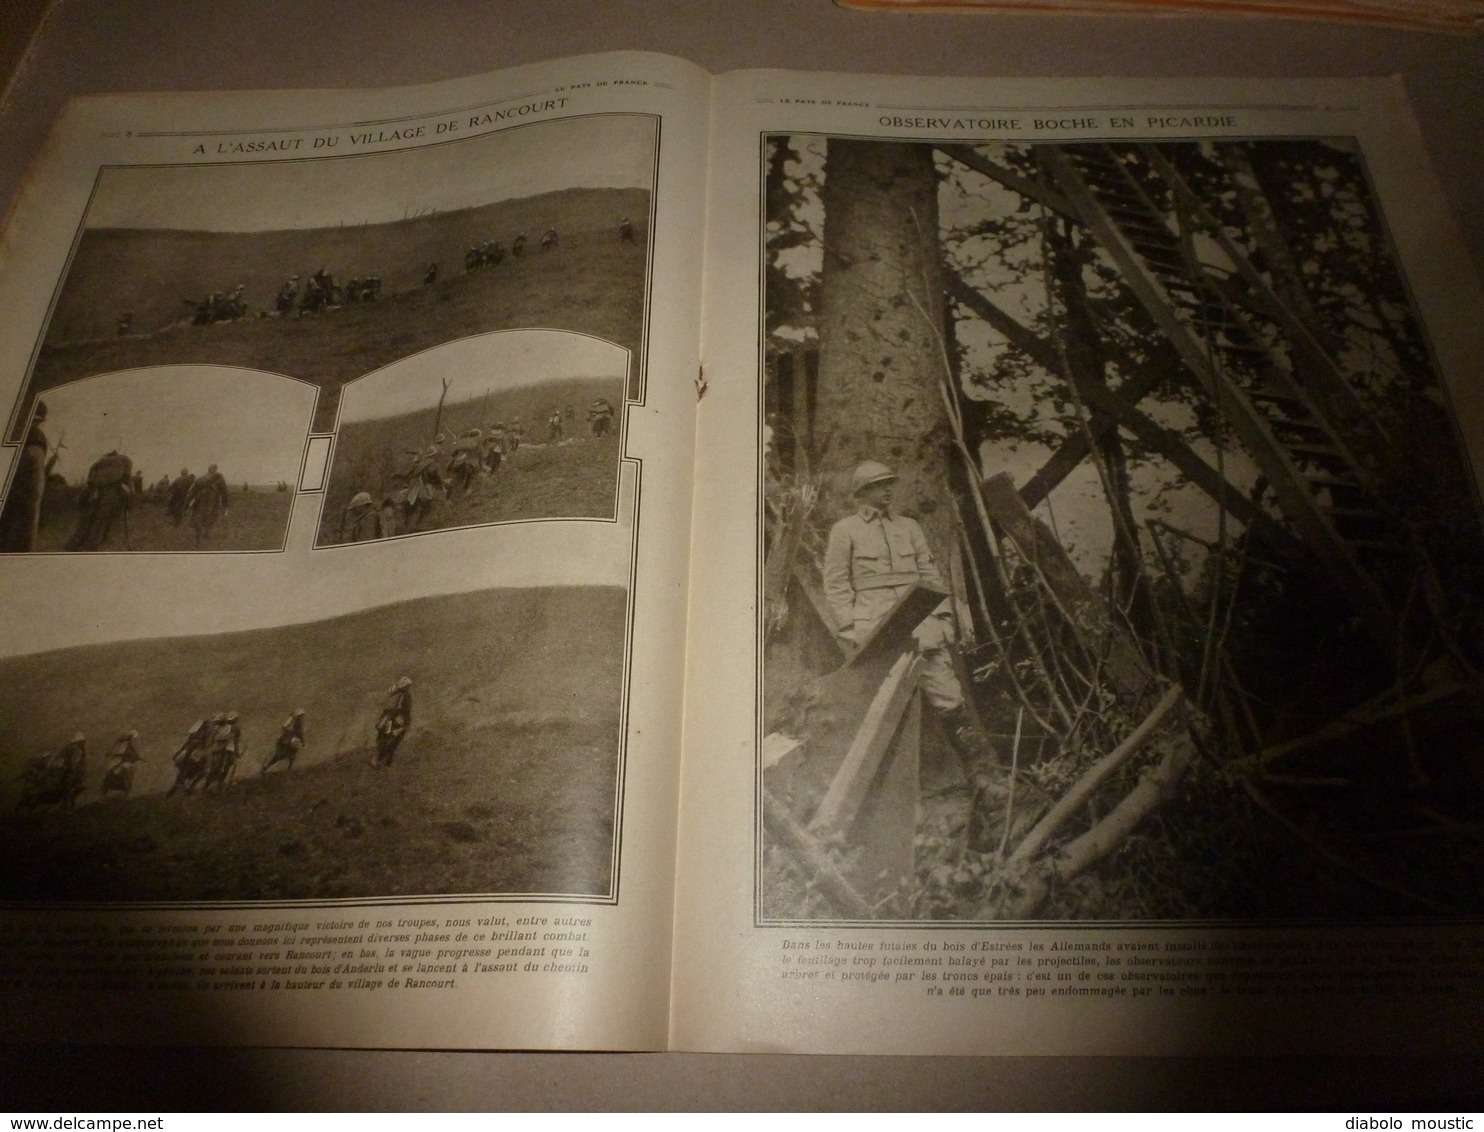 1916 LPDF: British soldiers; Portrait de Guynemer (couverture);Macédoine;Finsbury;Le beau Danube rouge;Rancourt;etc